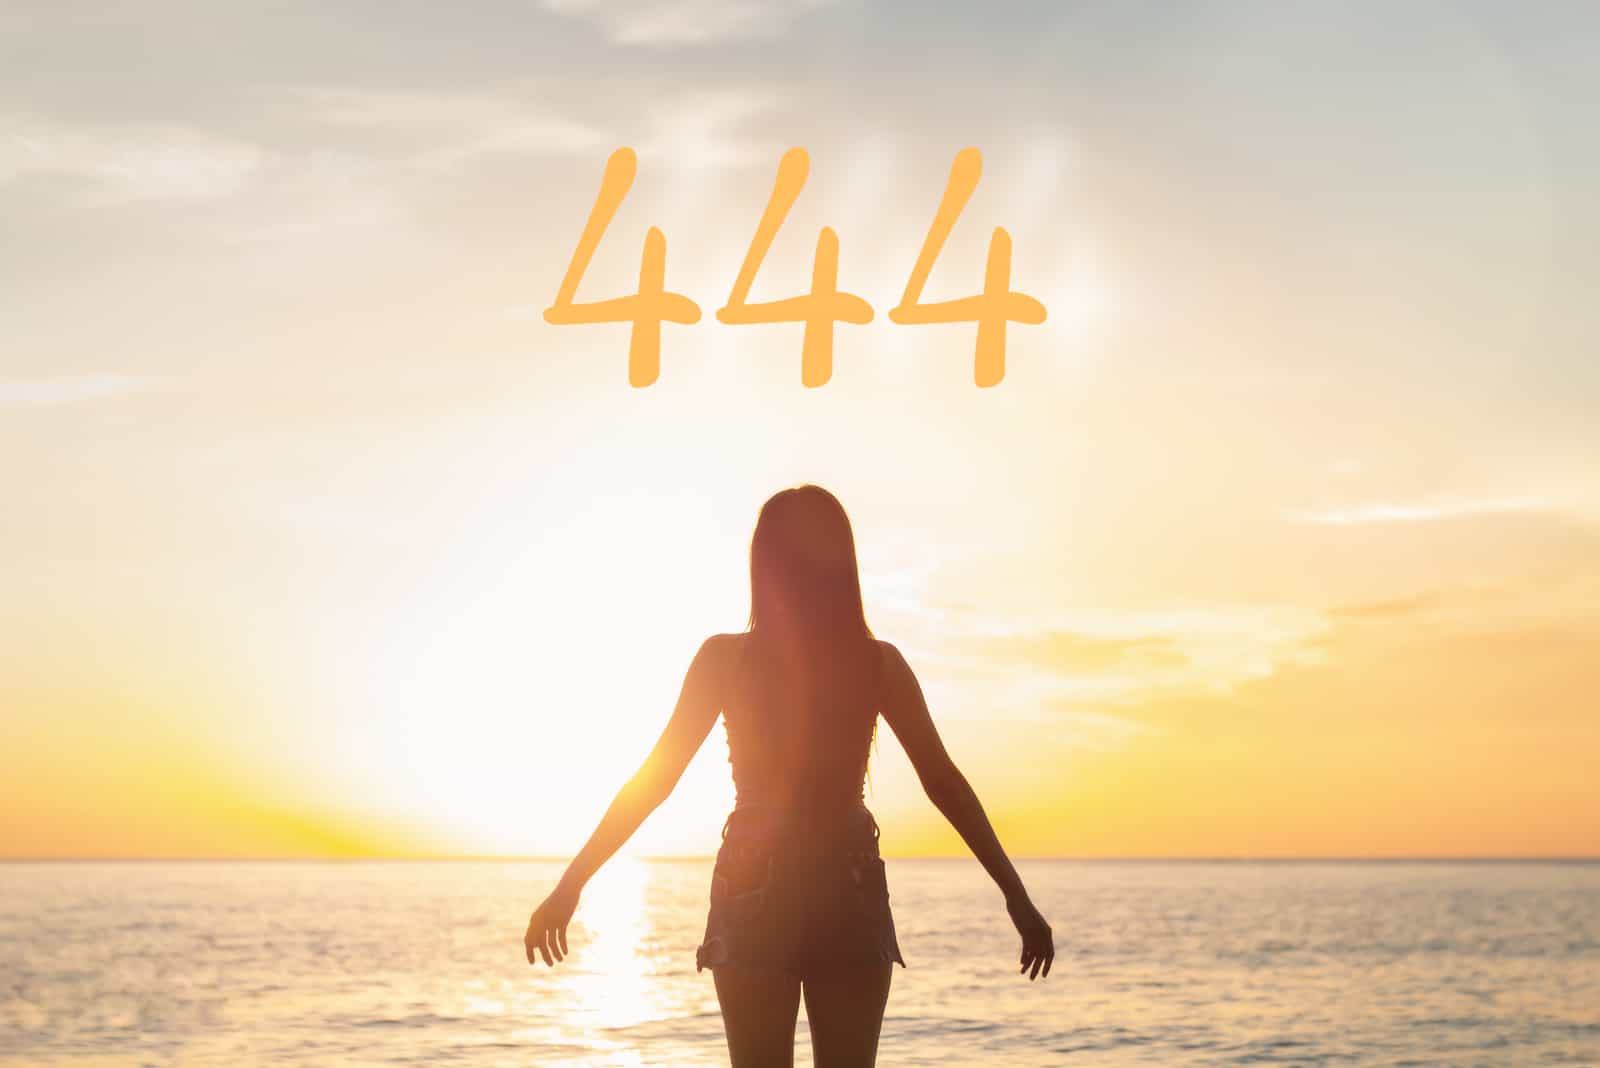 444, was für eine Bedeutung steckt hinter dieser Zahl?